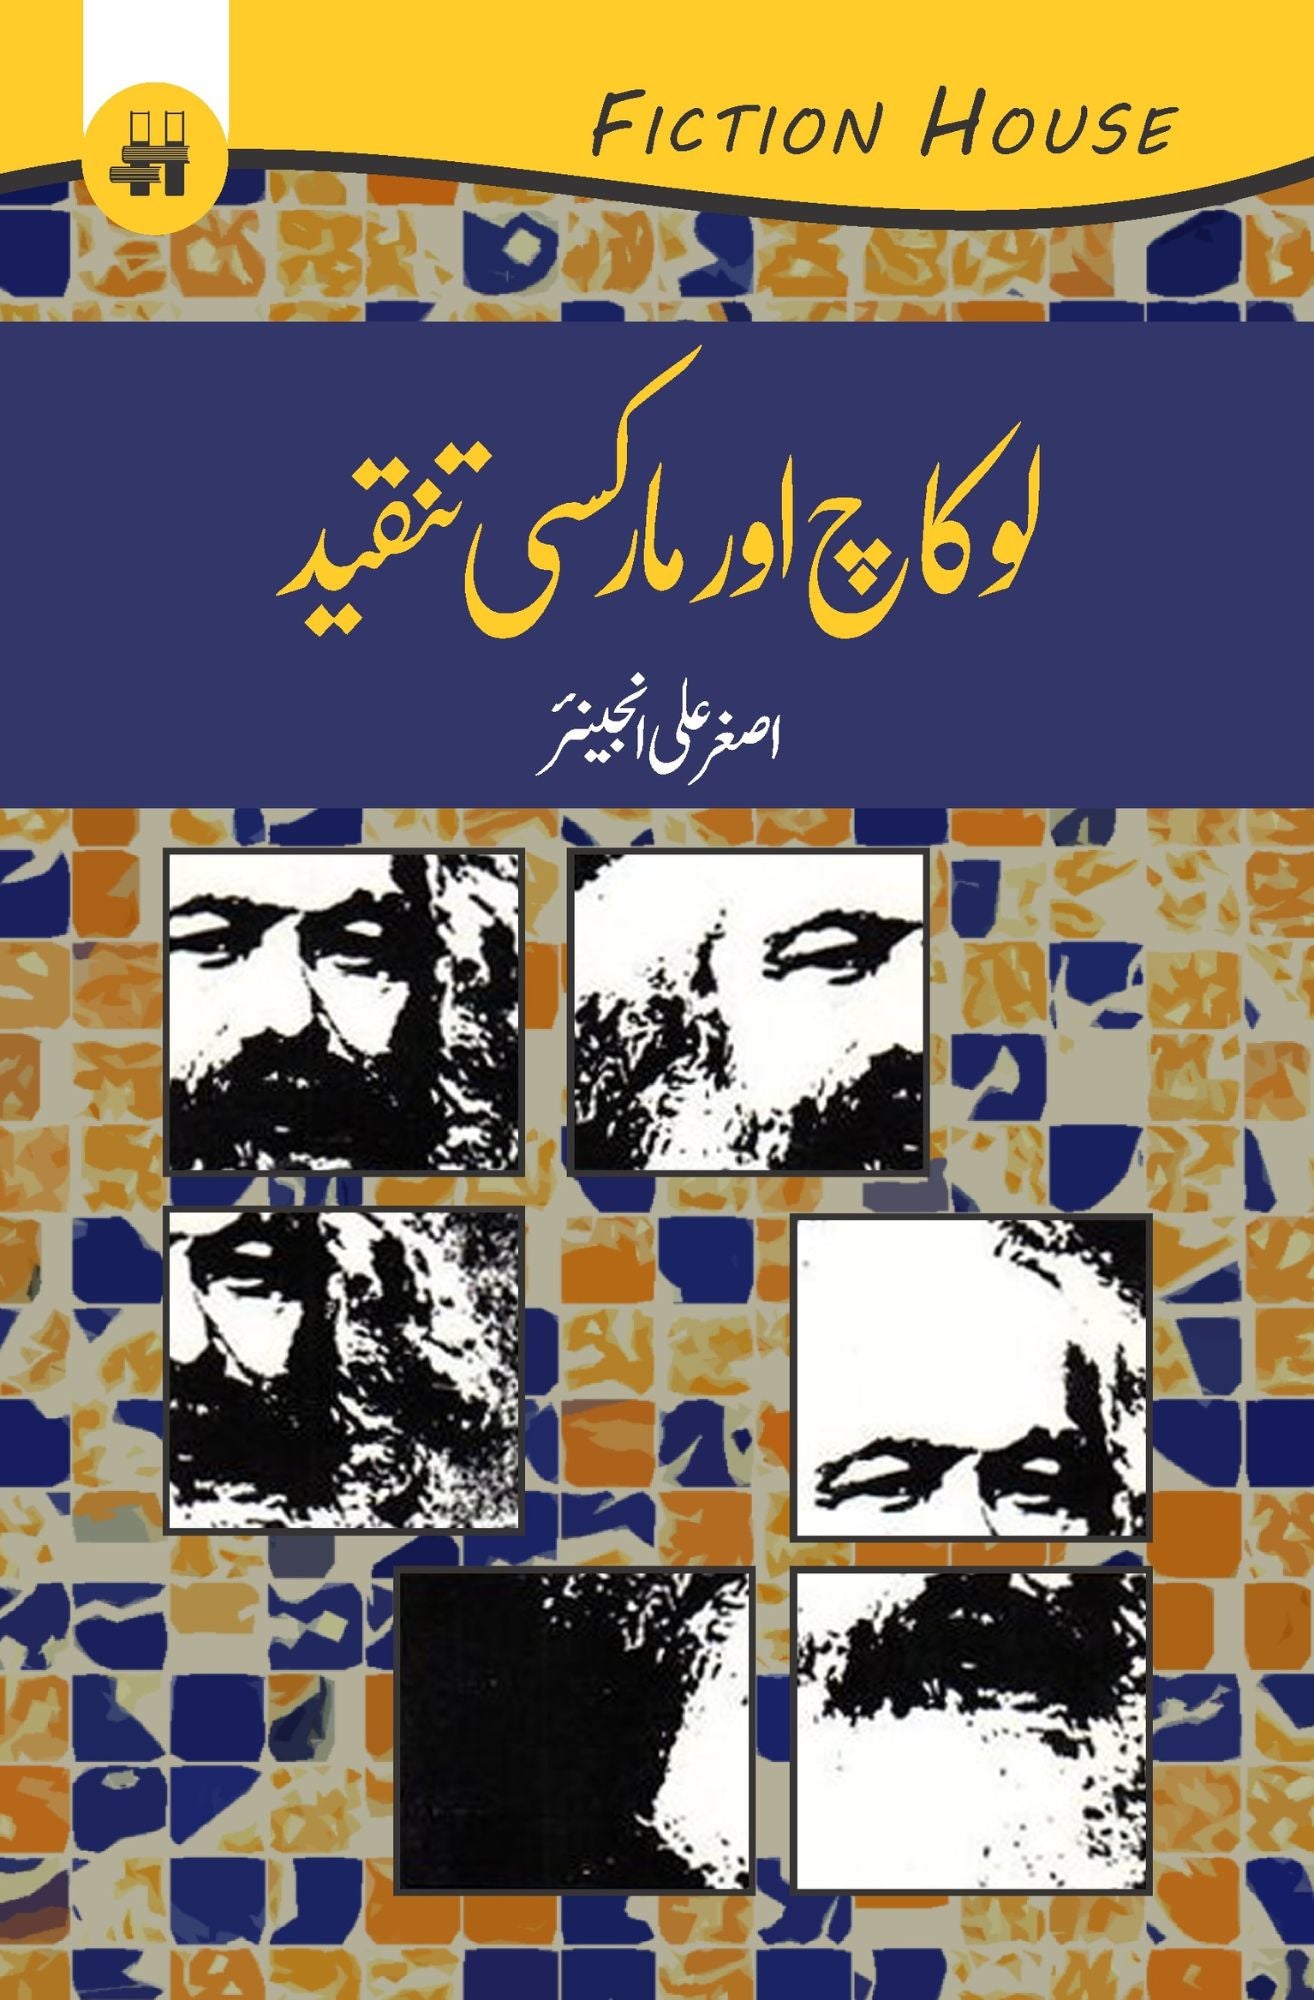 لوکاچ اور مارکسی تنقید | Lokach Aur Markasi Tanqeed Fiction House